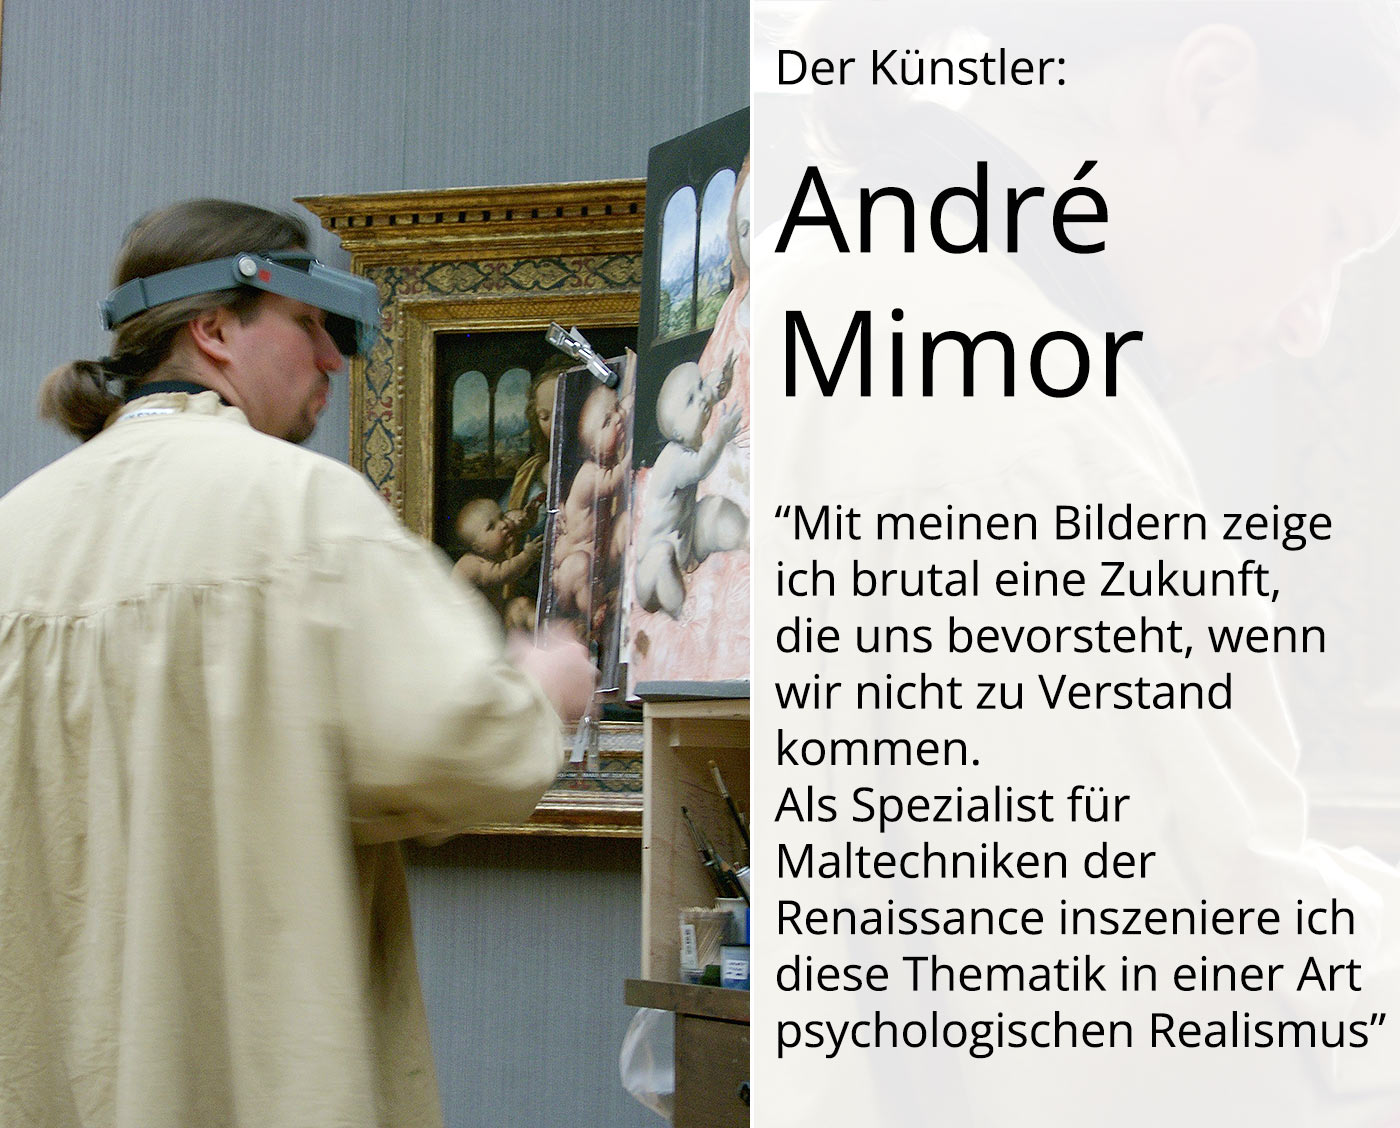 Großformat: psychologischer Realismus, André Mimor: "Ultima Thule", Original (Unikat)